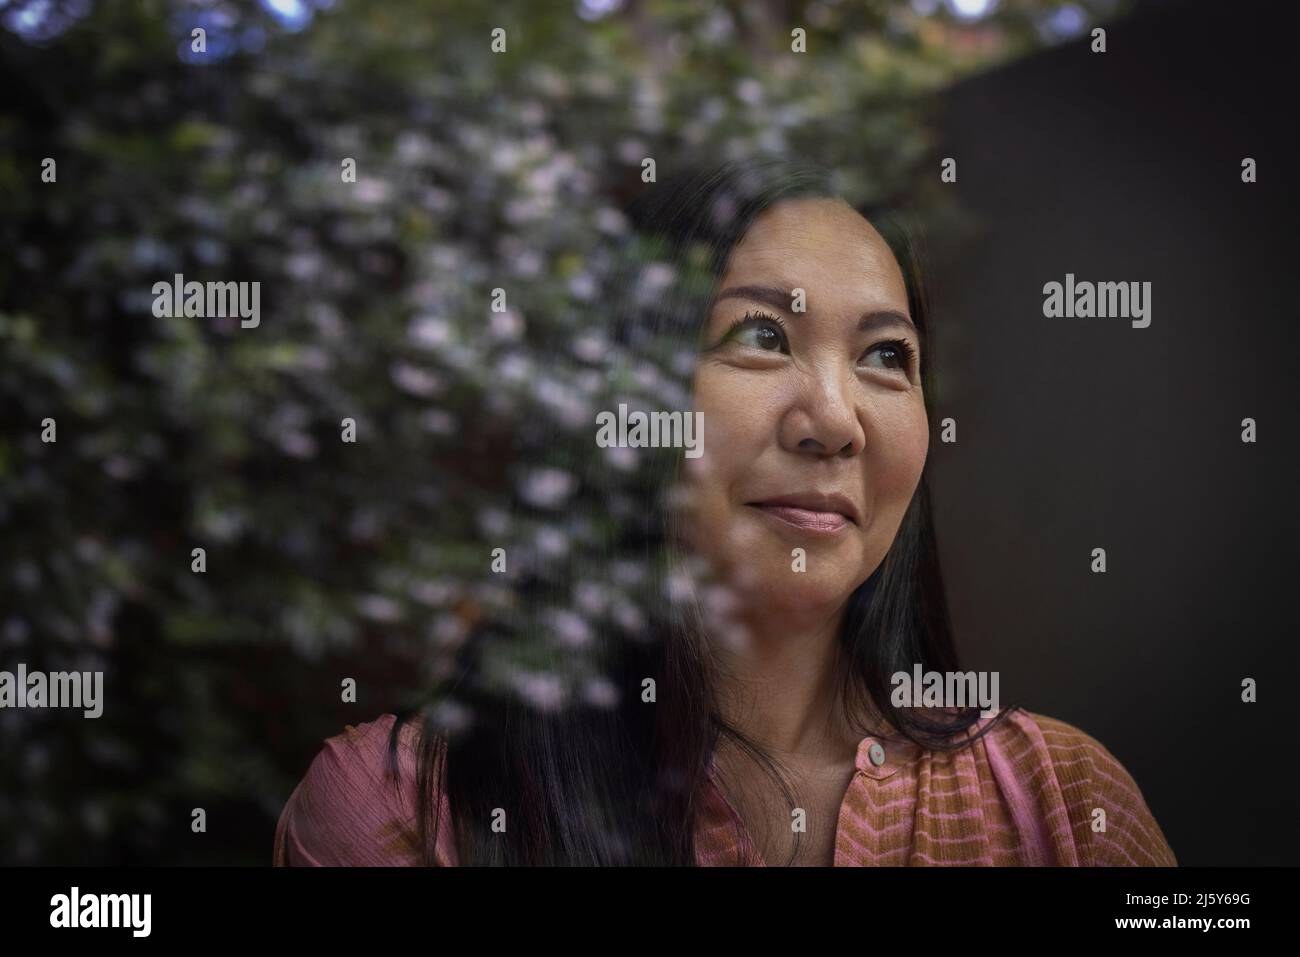 Mira a una mujer sonriente mirando por la ventana con reflexión Foto de stock